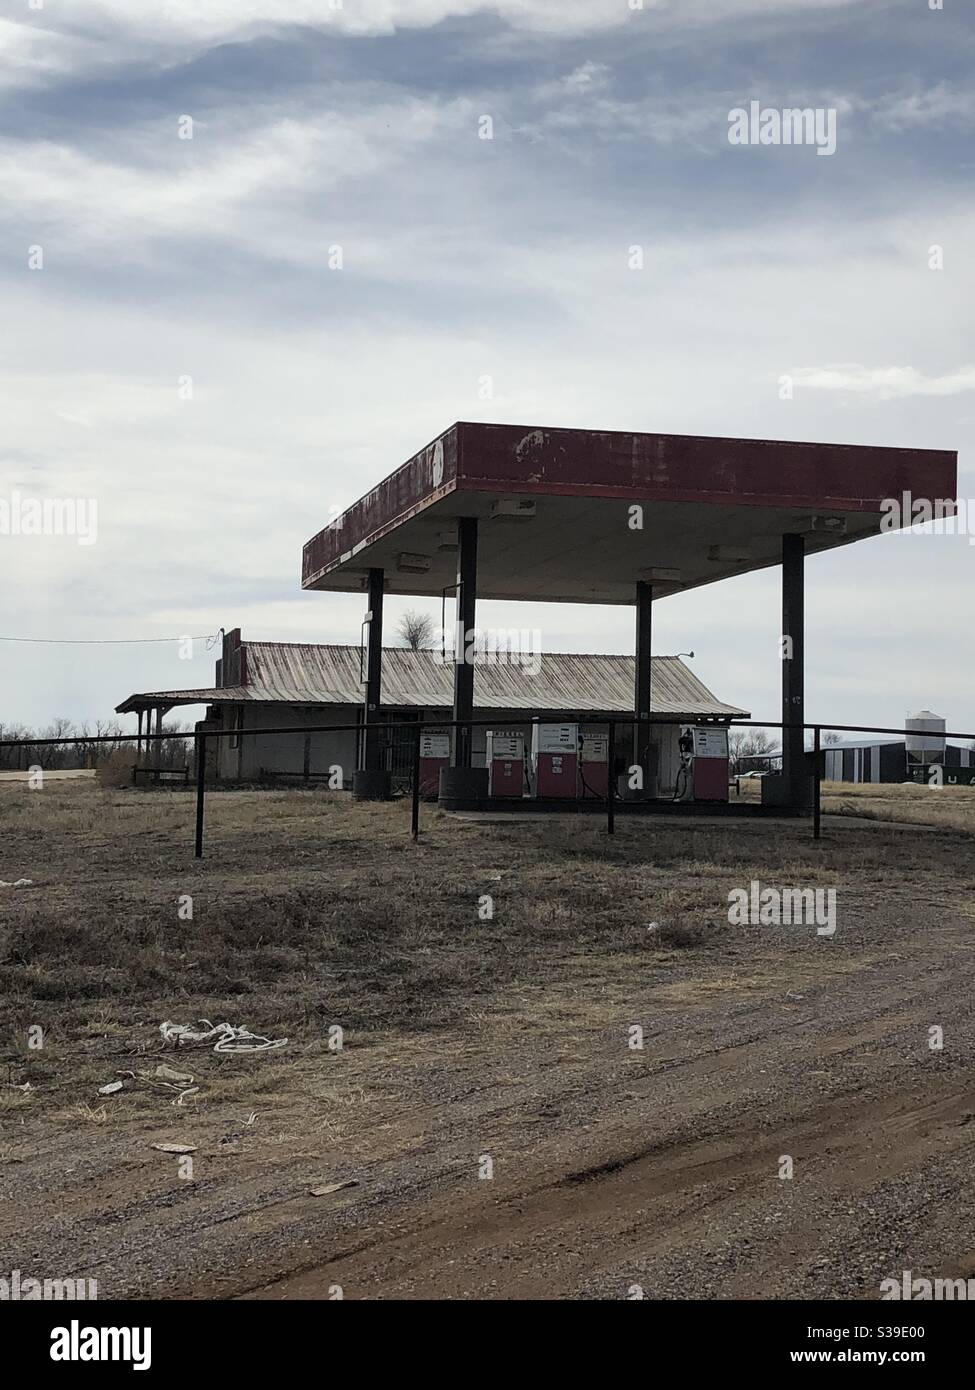 Gasolinera desierta en la ciudad fantasma Foto de stock